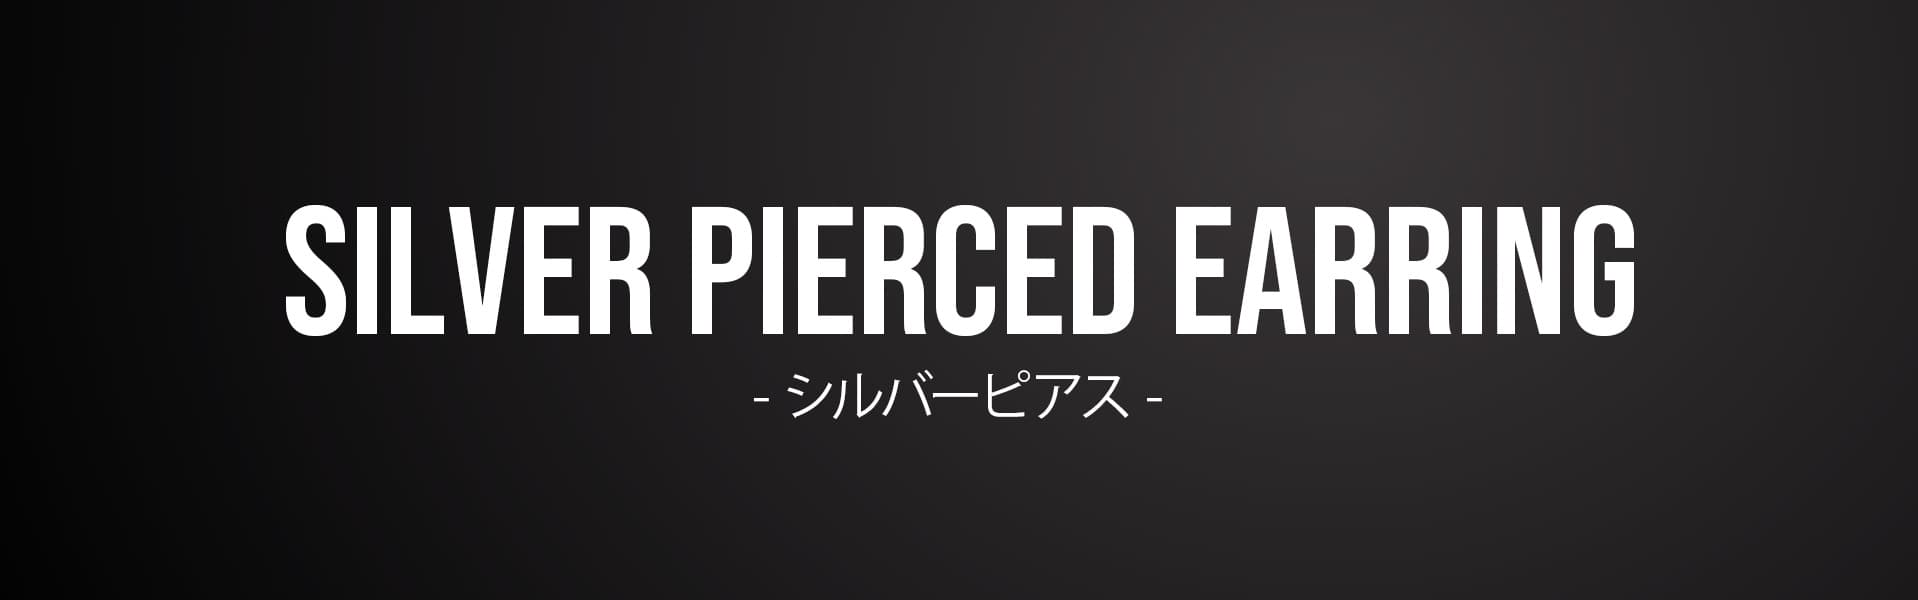 silver pierced earring